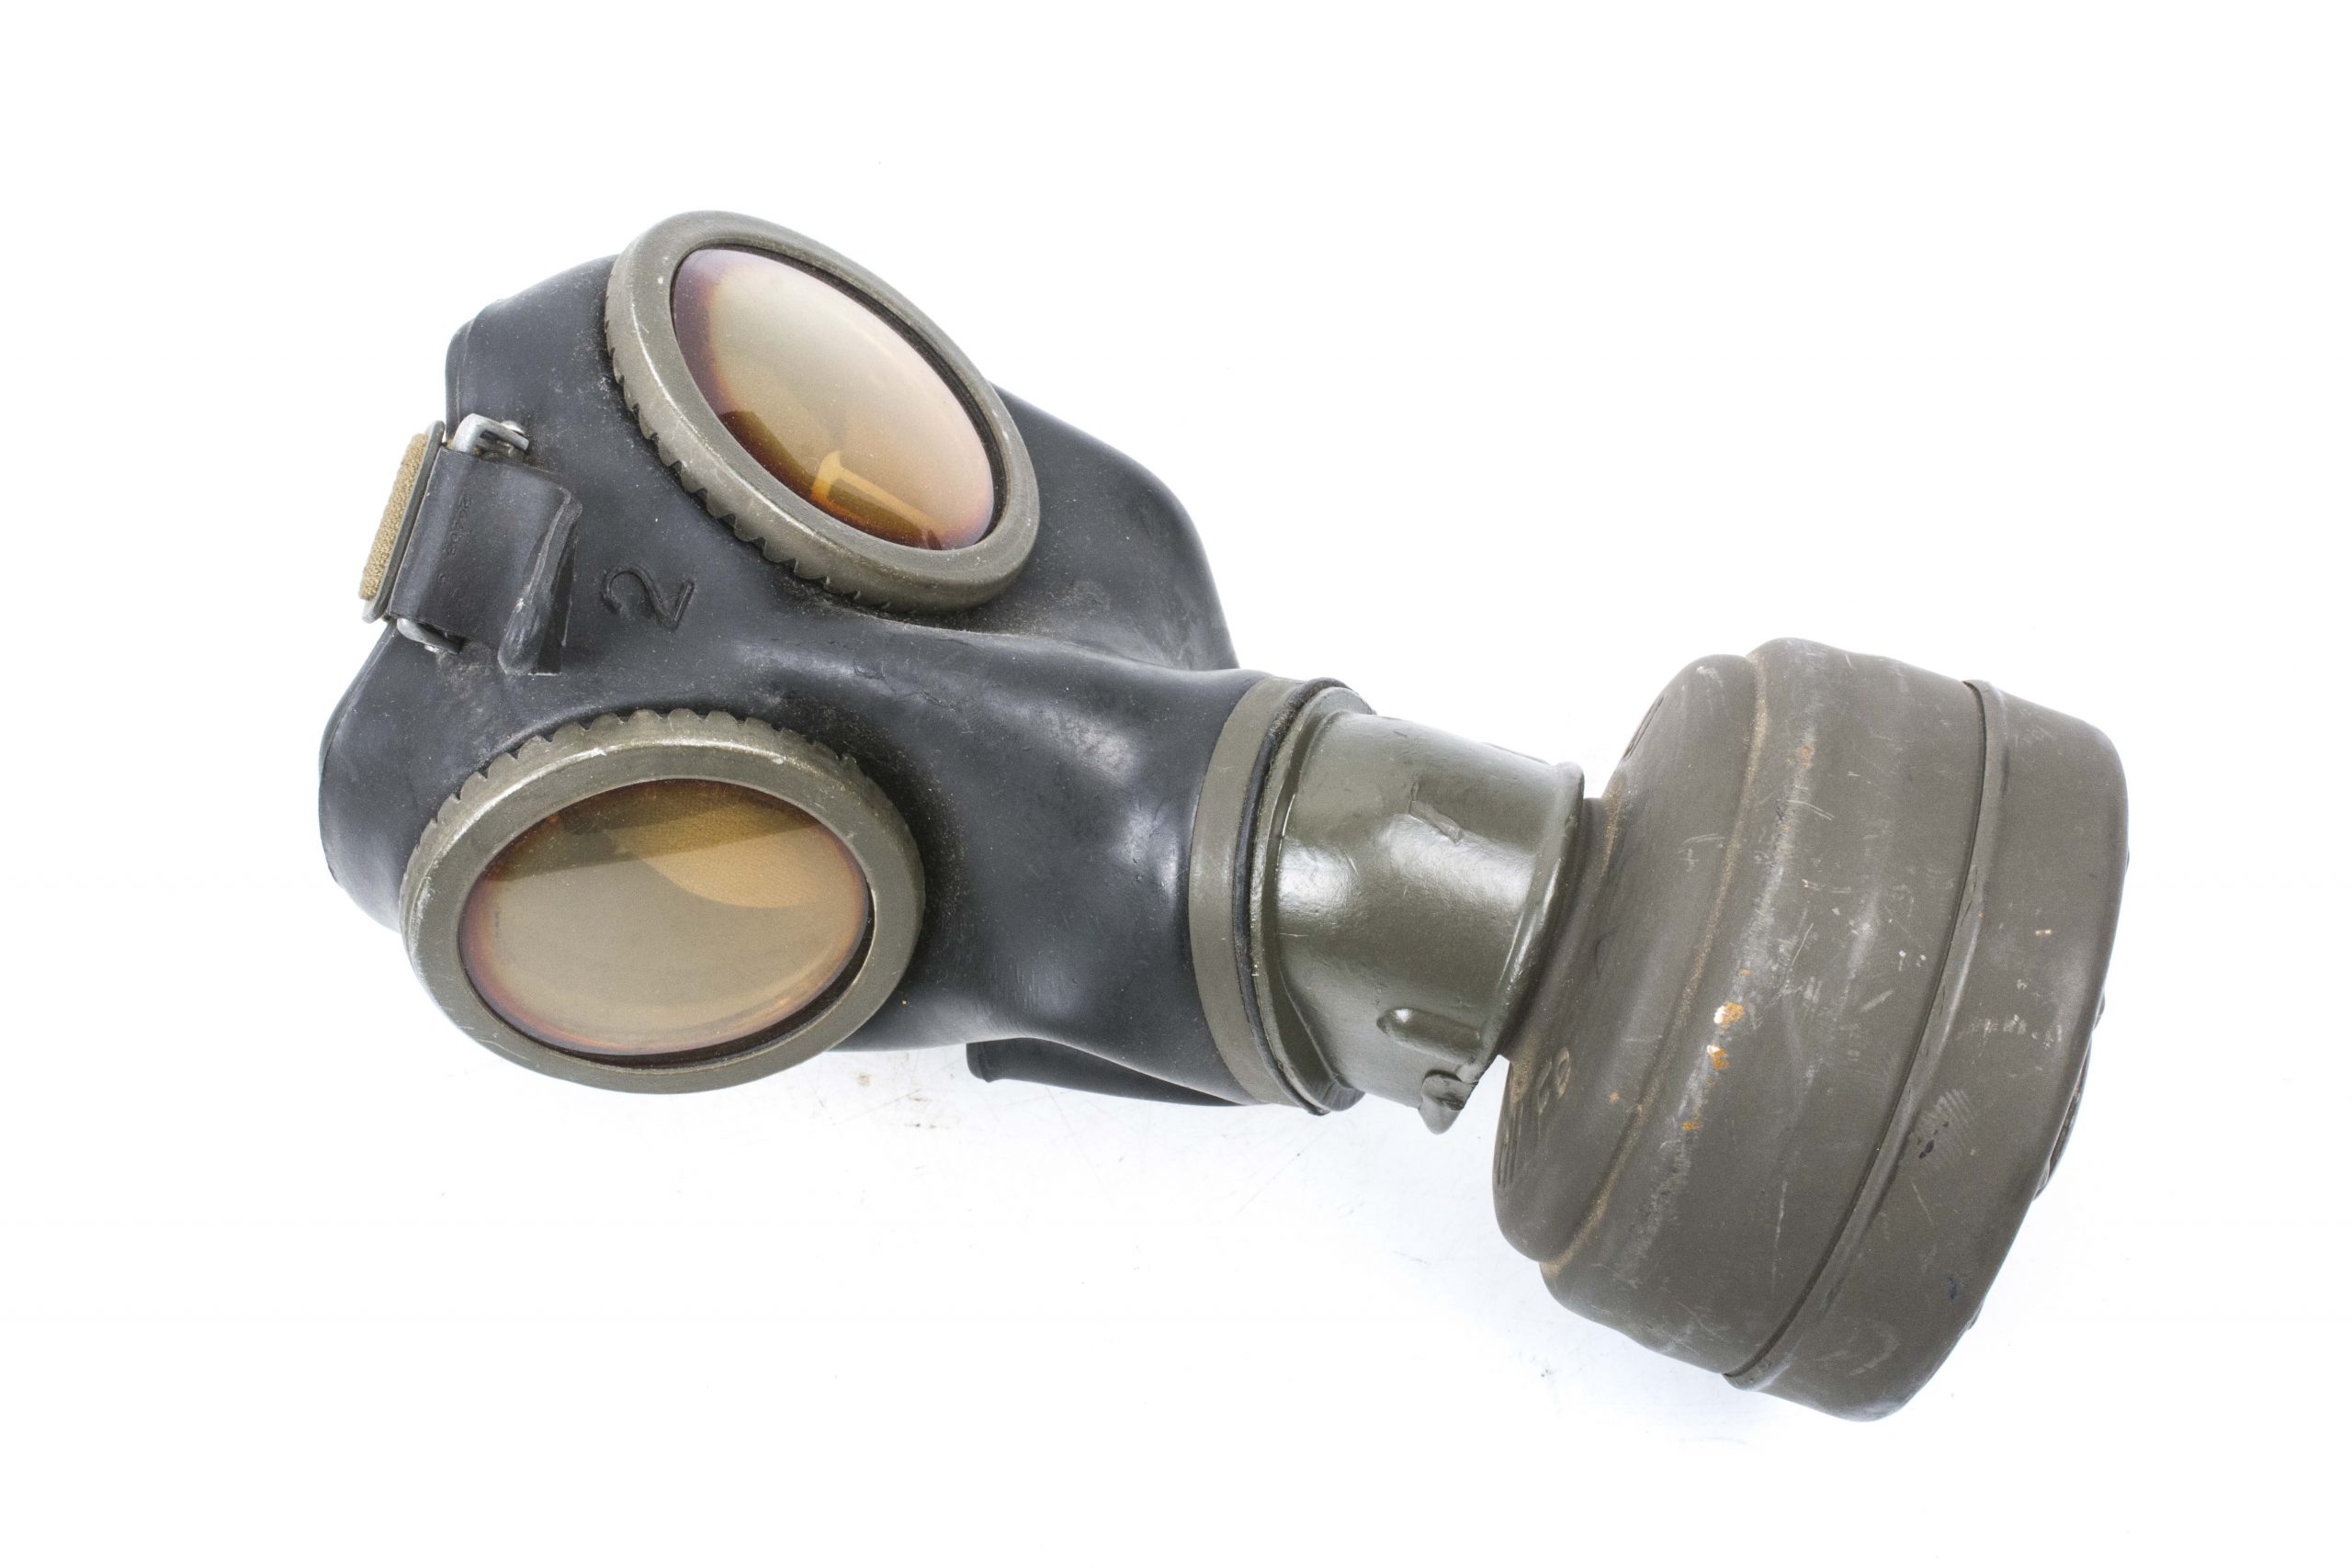 Black rubber M38 gasmask – fjm44